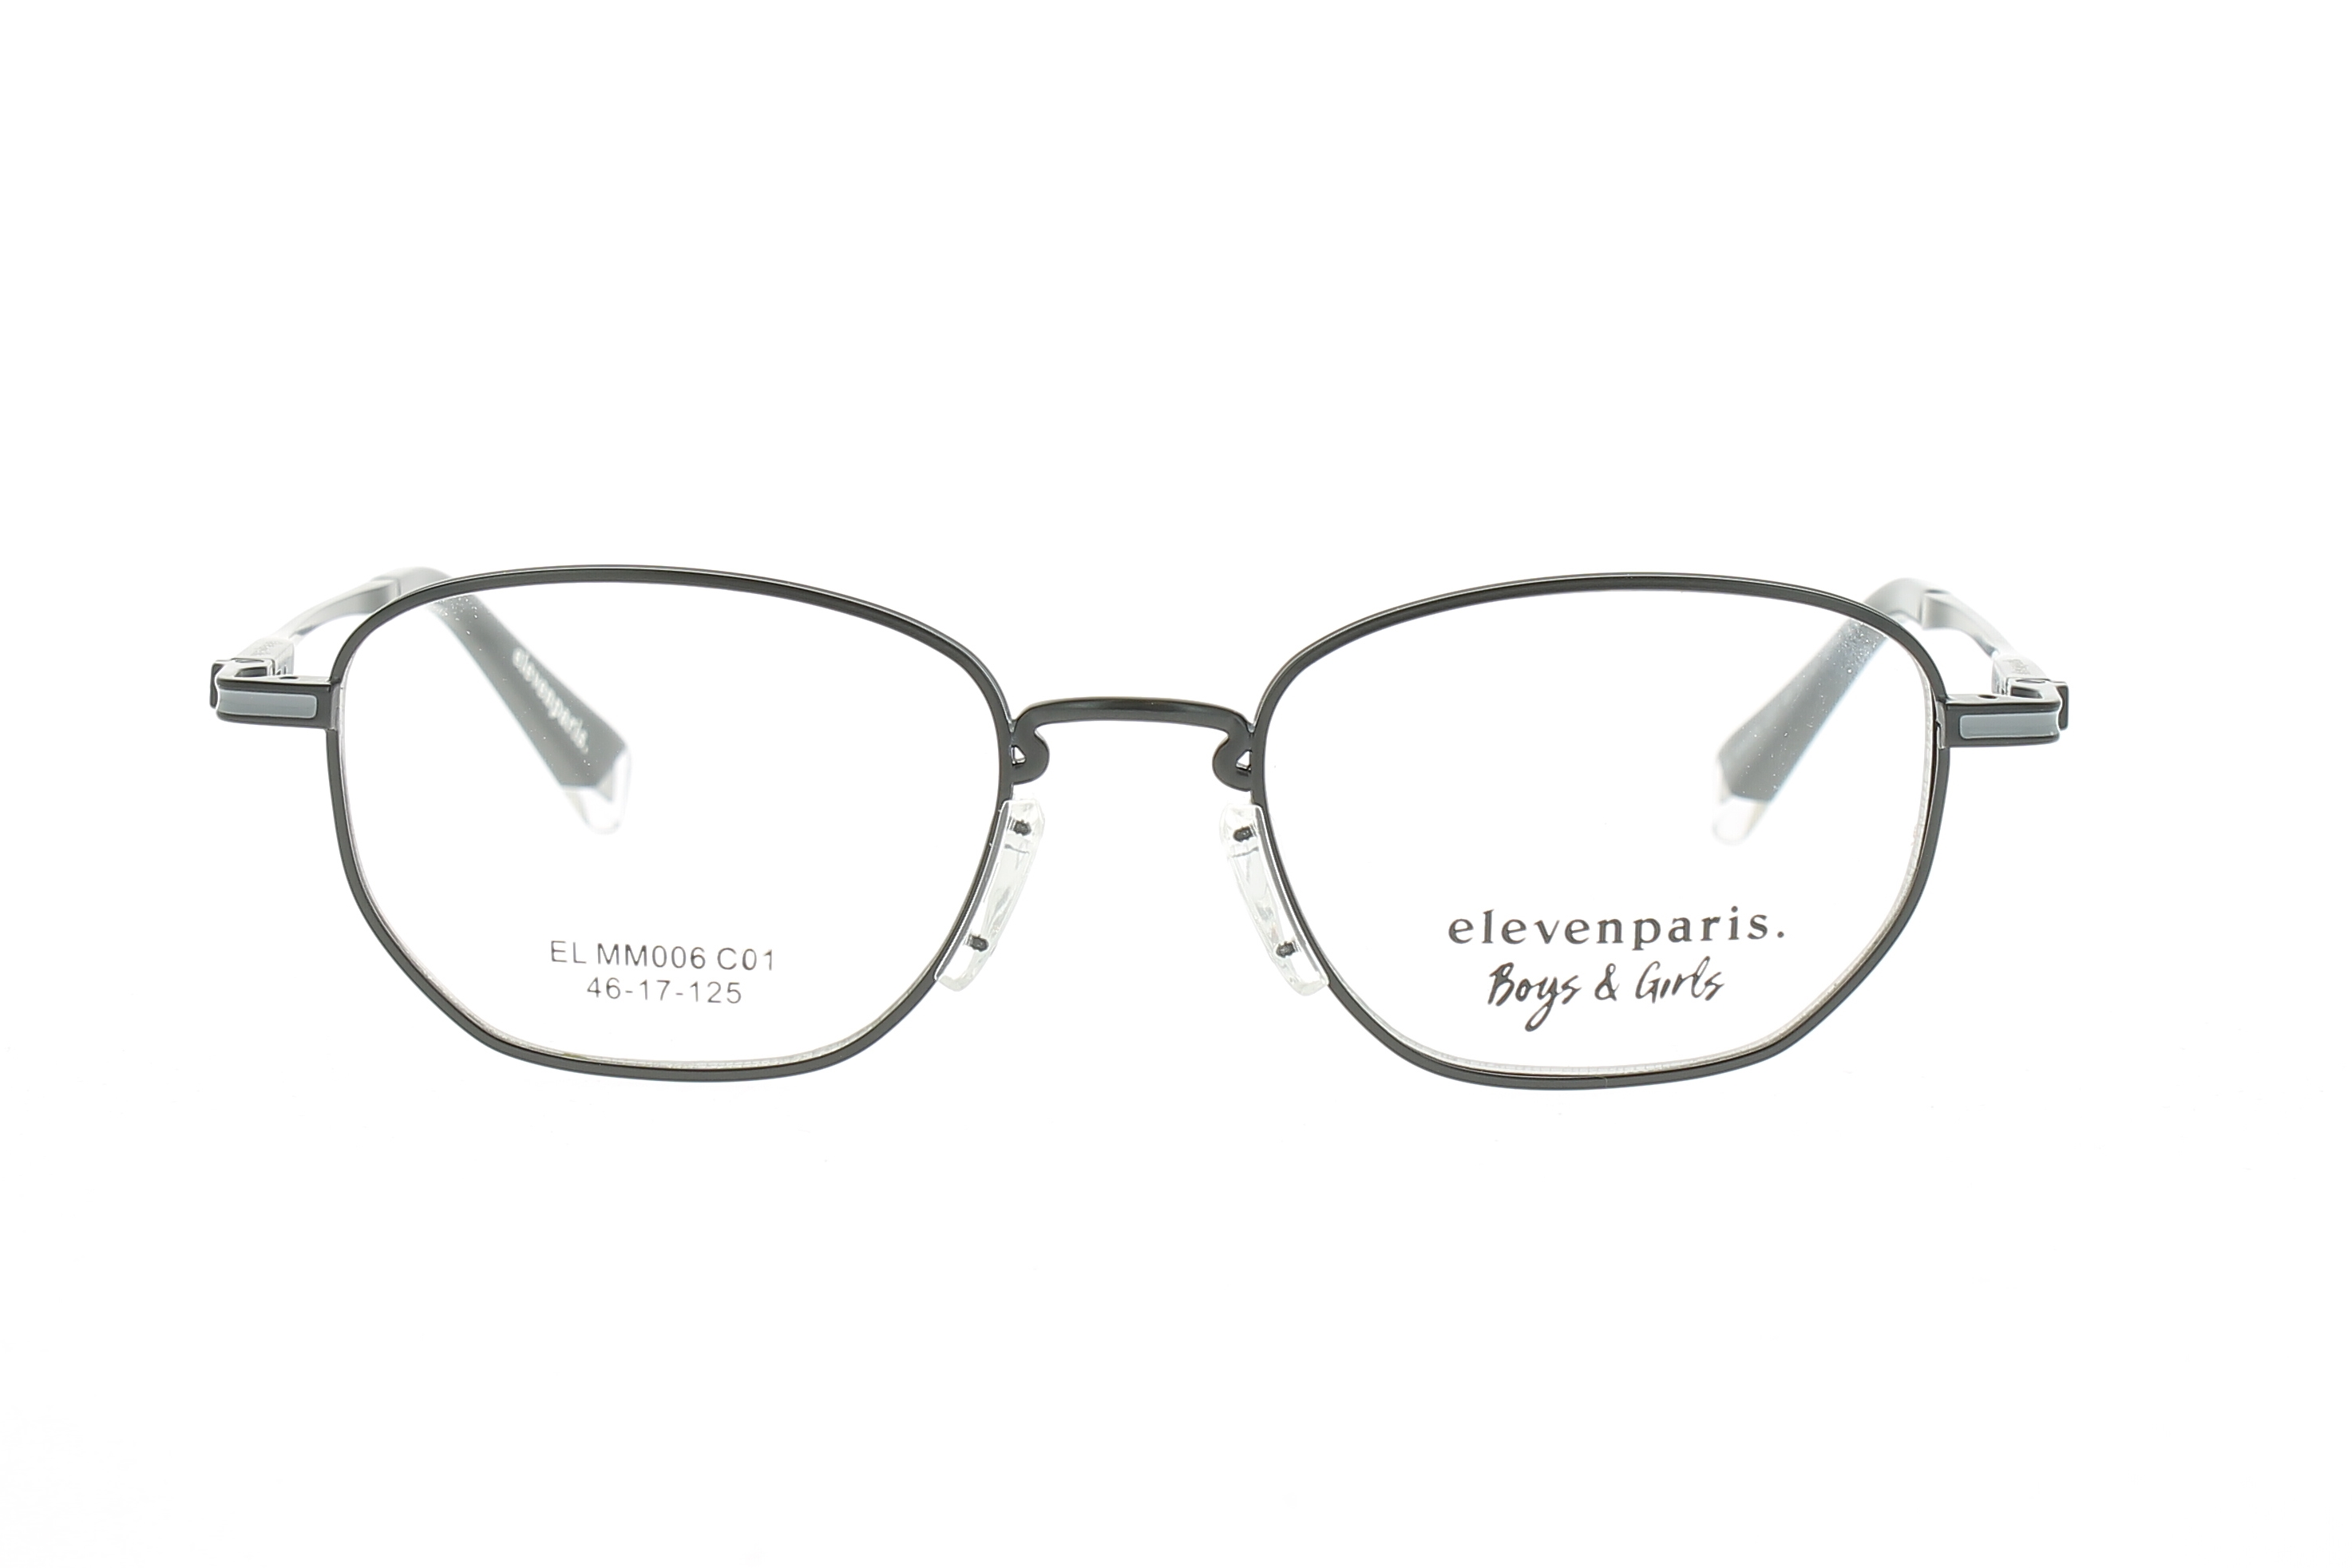 Paire de lunettes de vue Little-eleven-paris Elmm006 couleur noir - Doyle